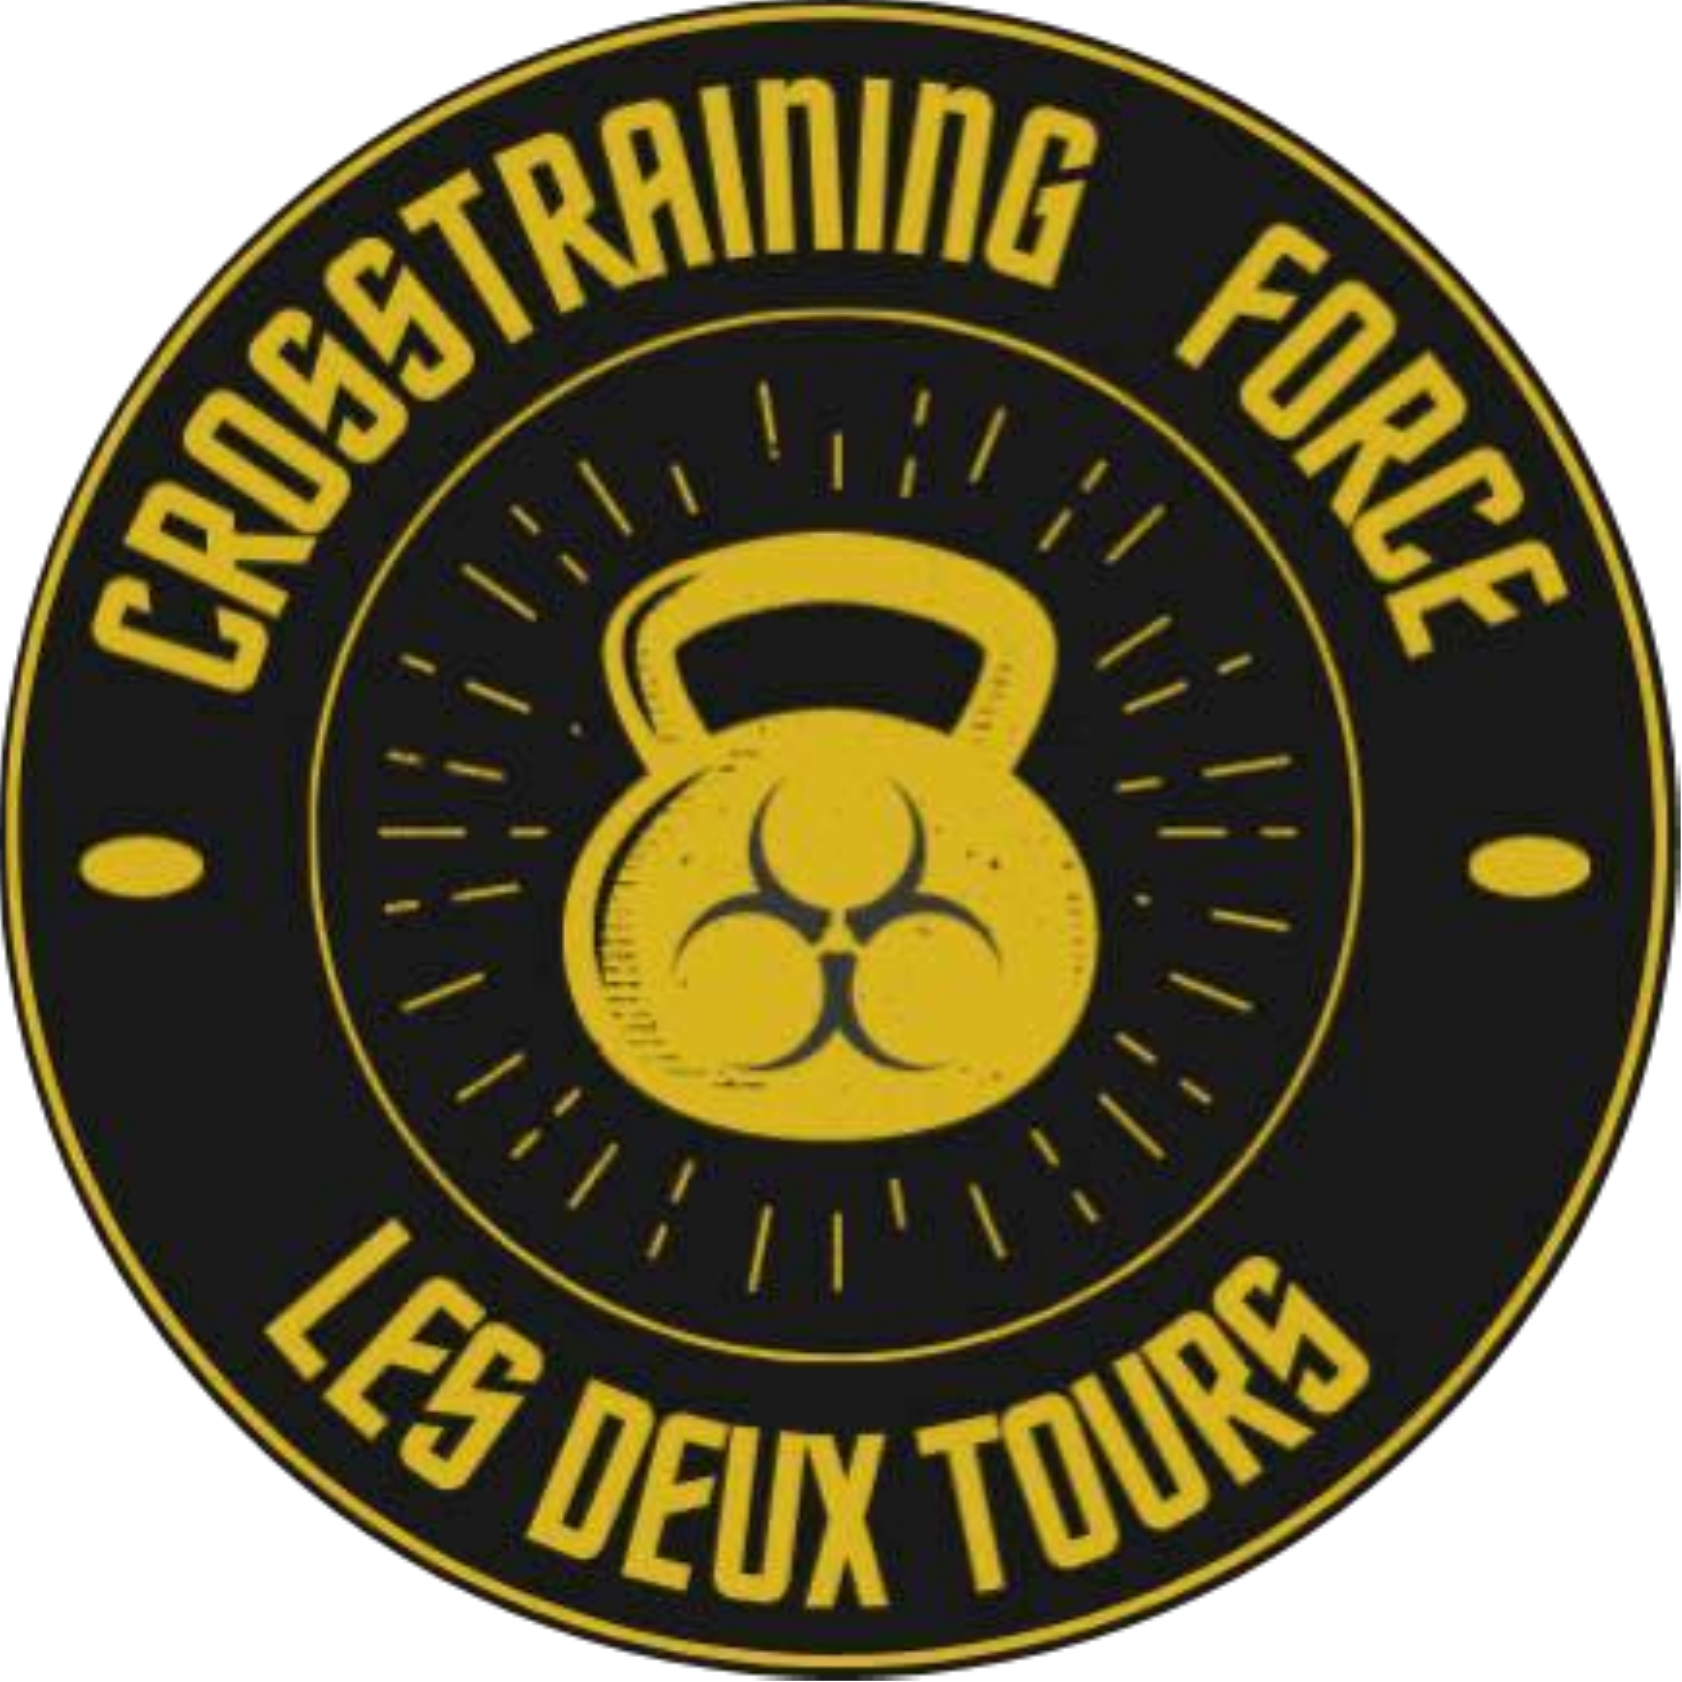 Logo Crosstrainning Force les deux Tours